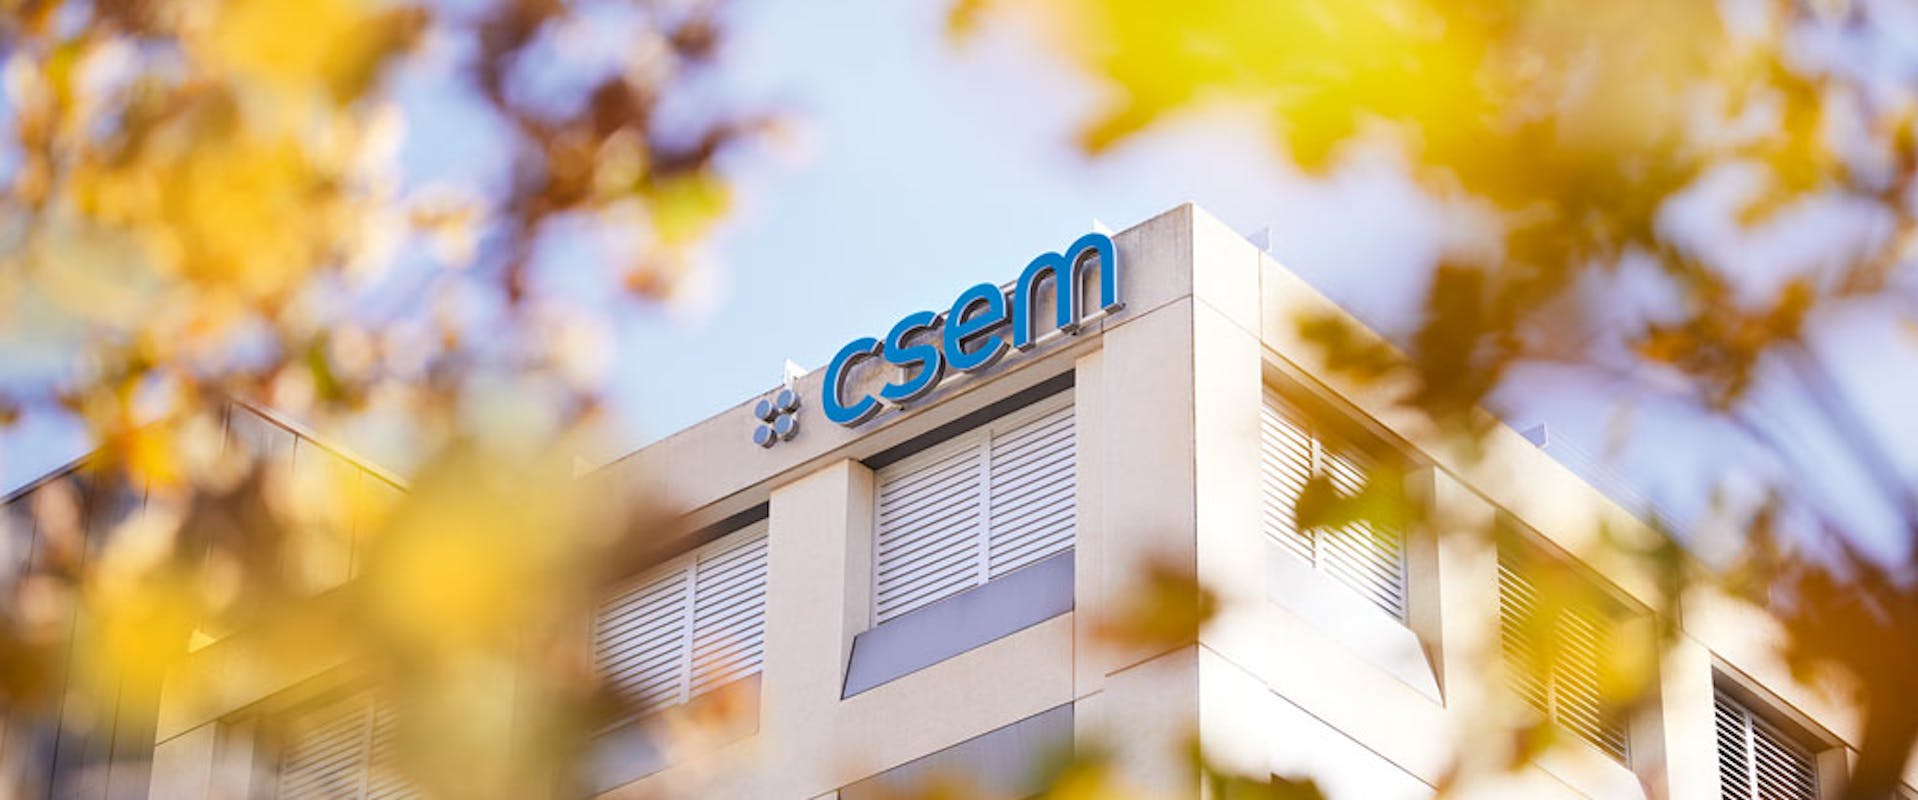 CSEM building